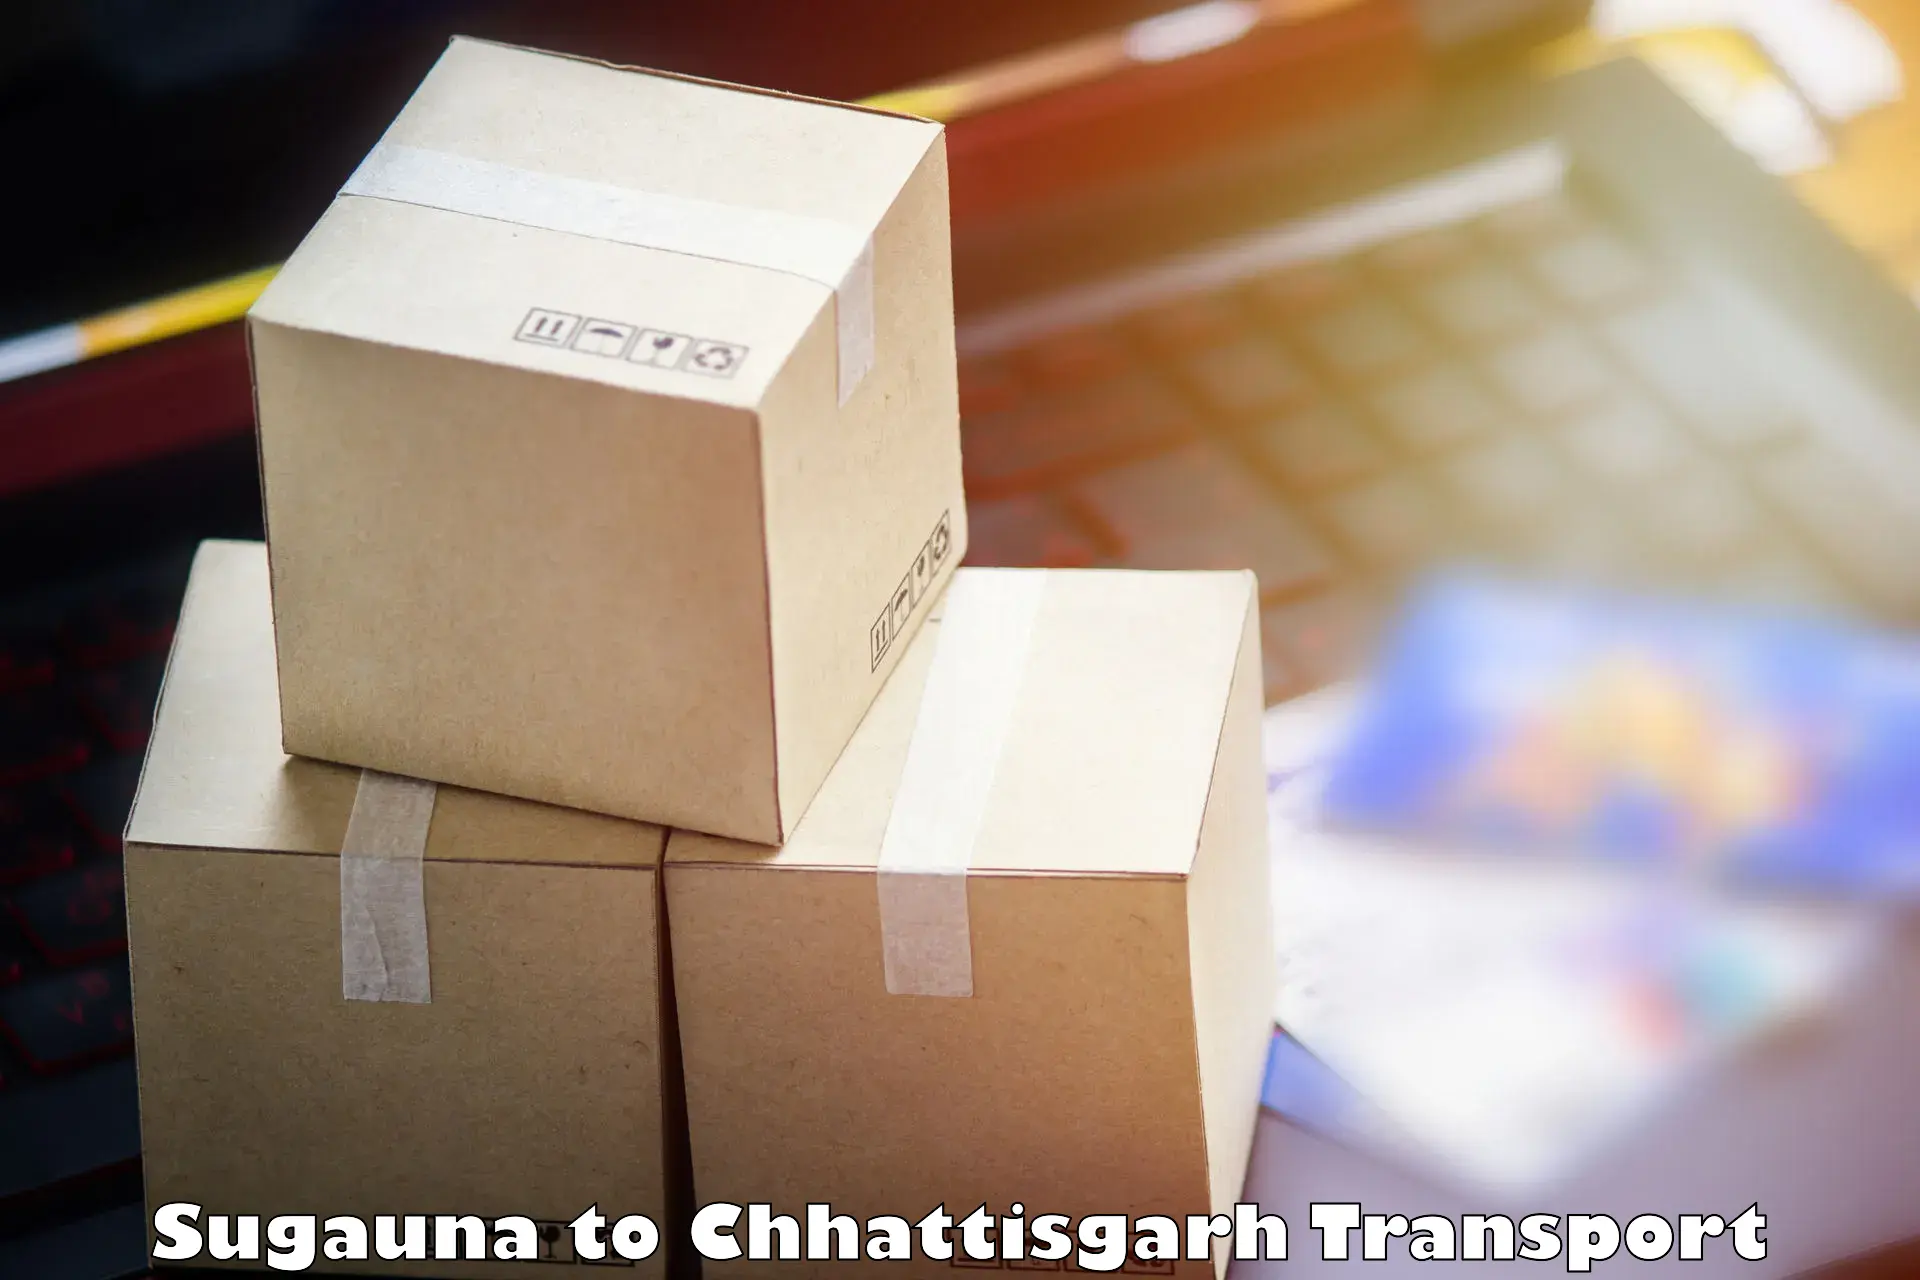 Furniture transport service Sugauna to Pakhanjur